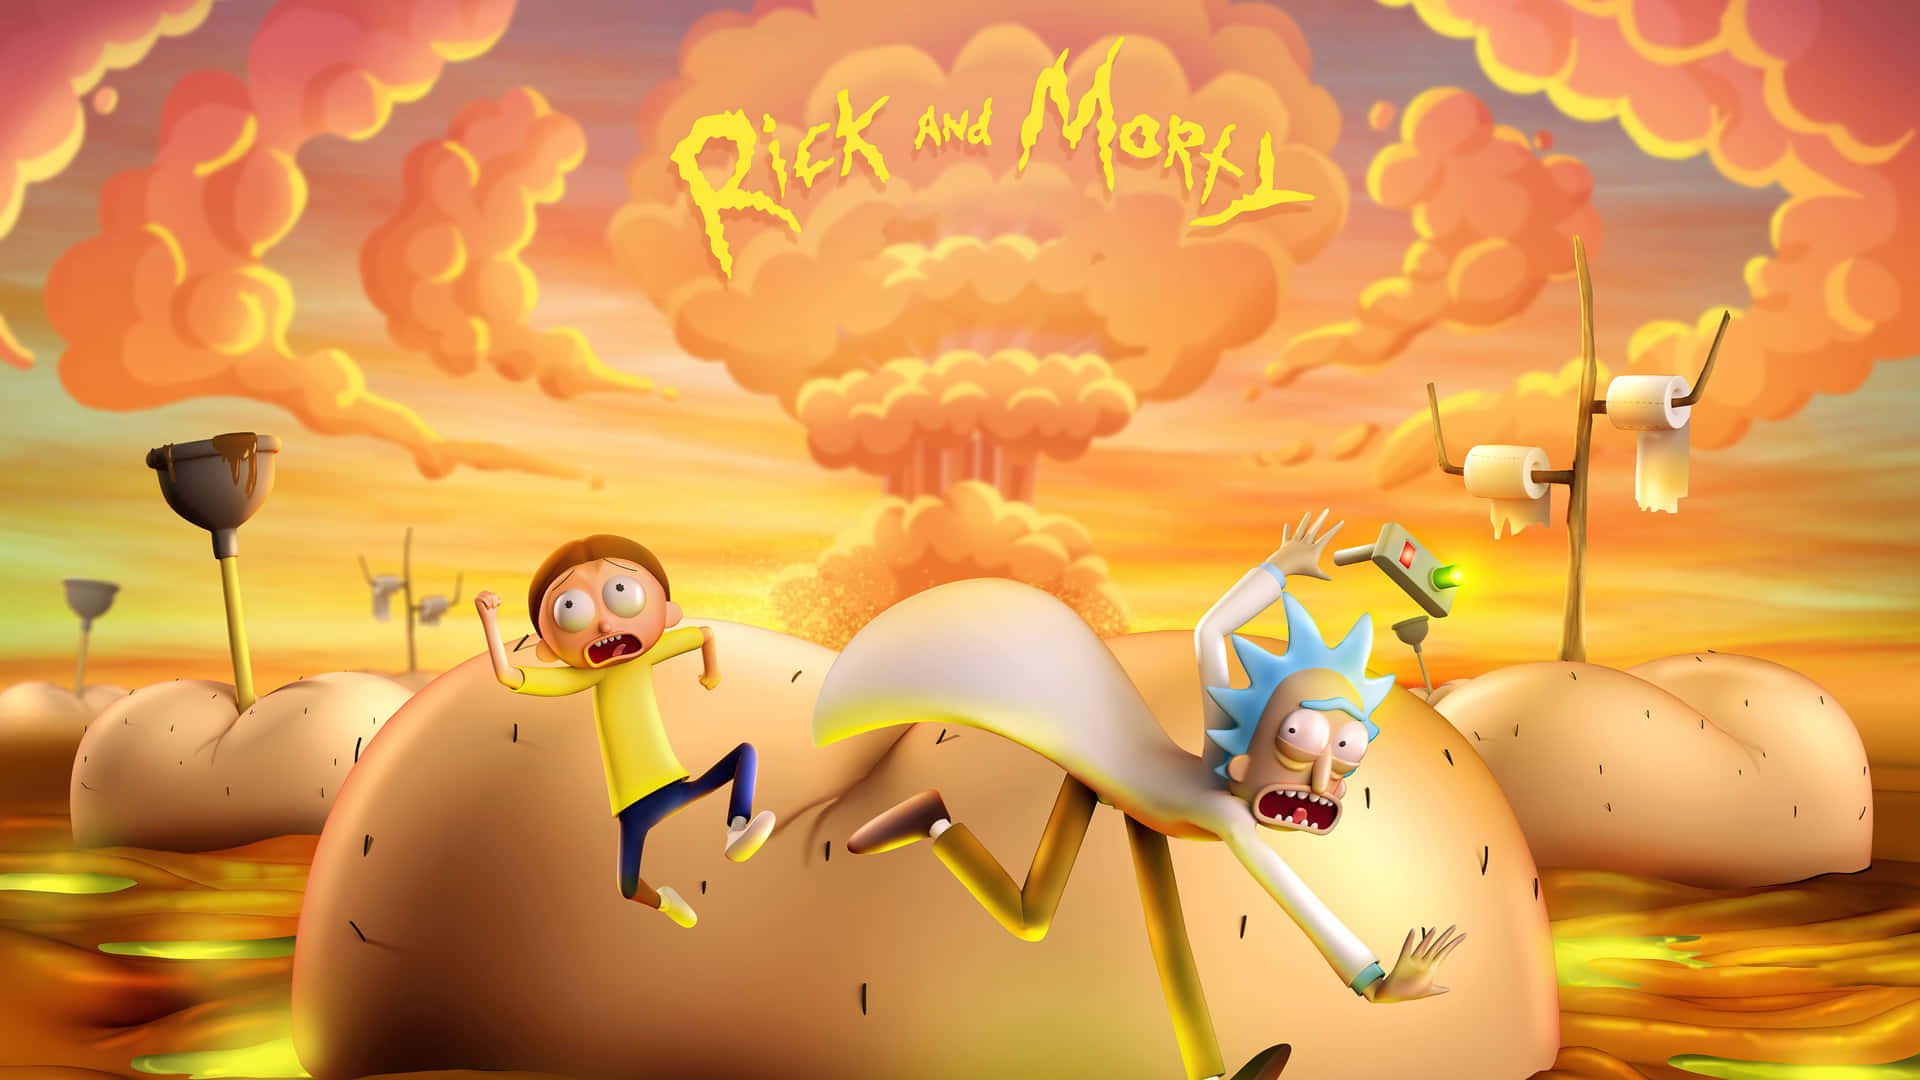 Rickoch Morty-bakgrundsbilder